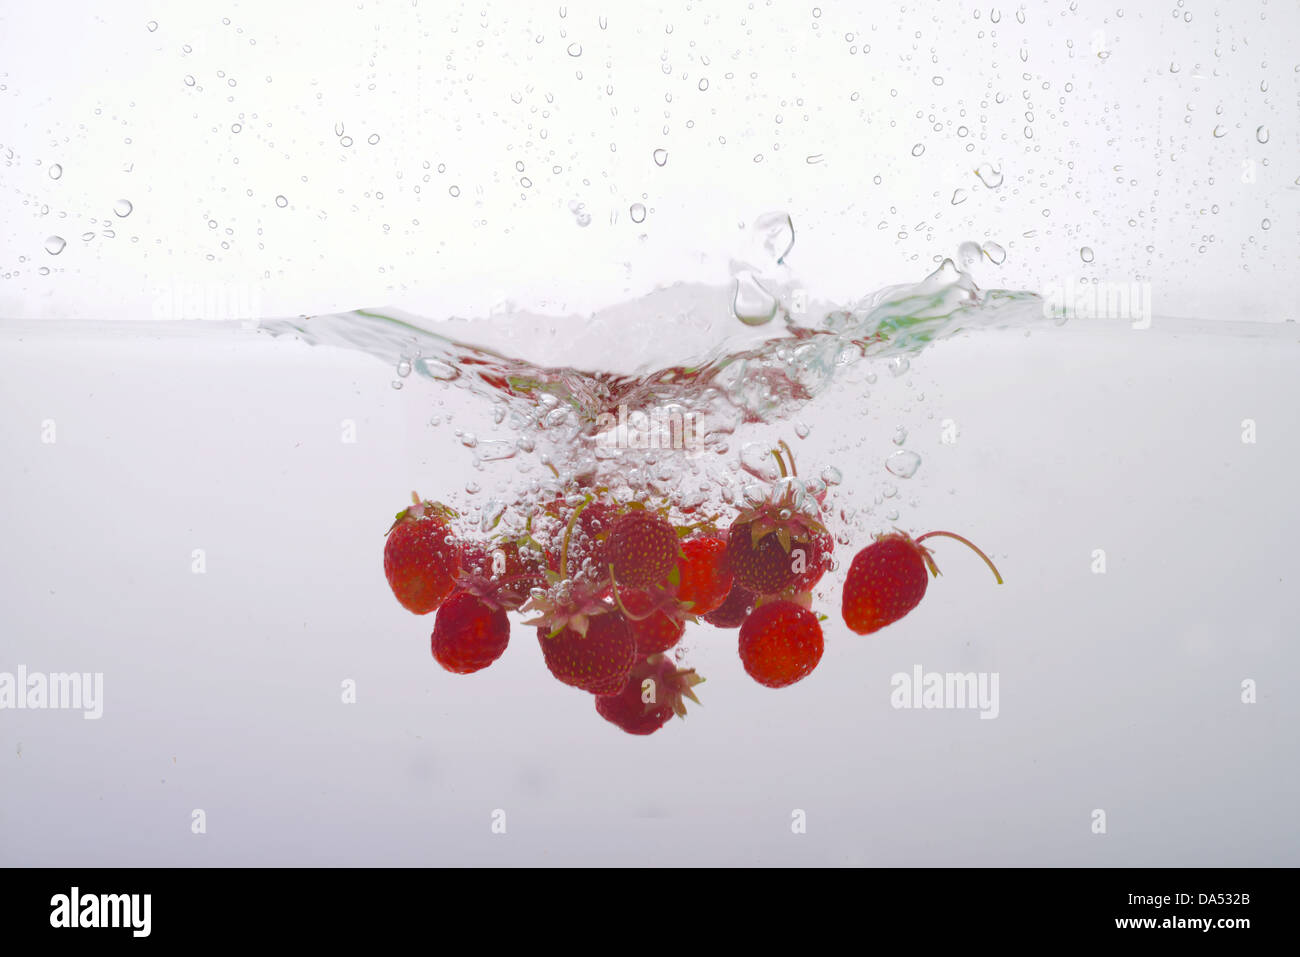 Les fraises dans l'eau éclaboussée Banque D'Images